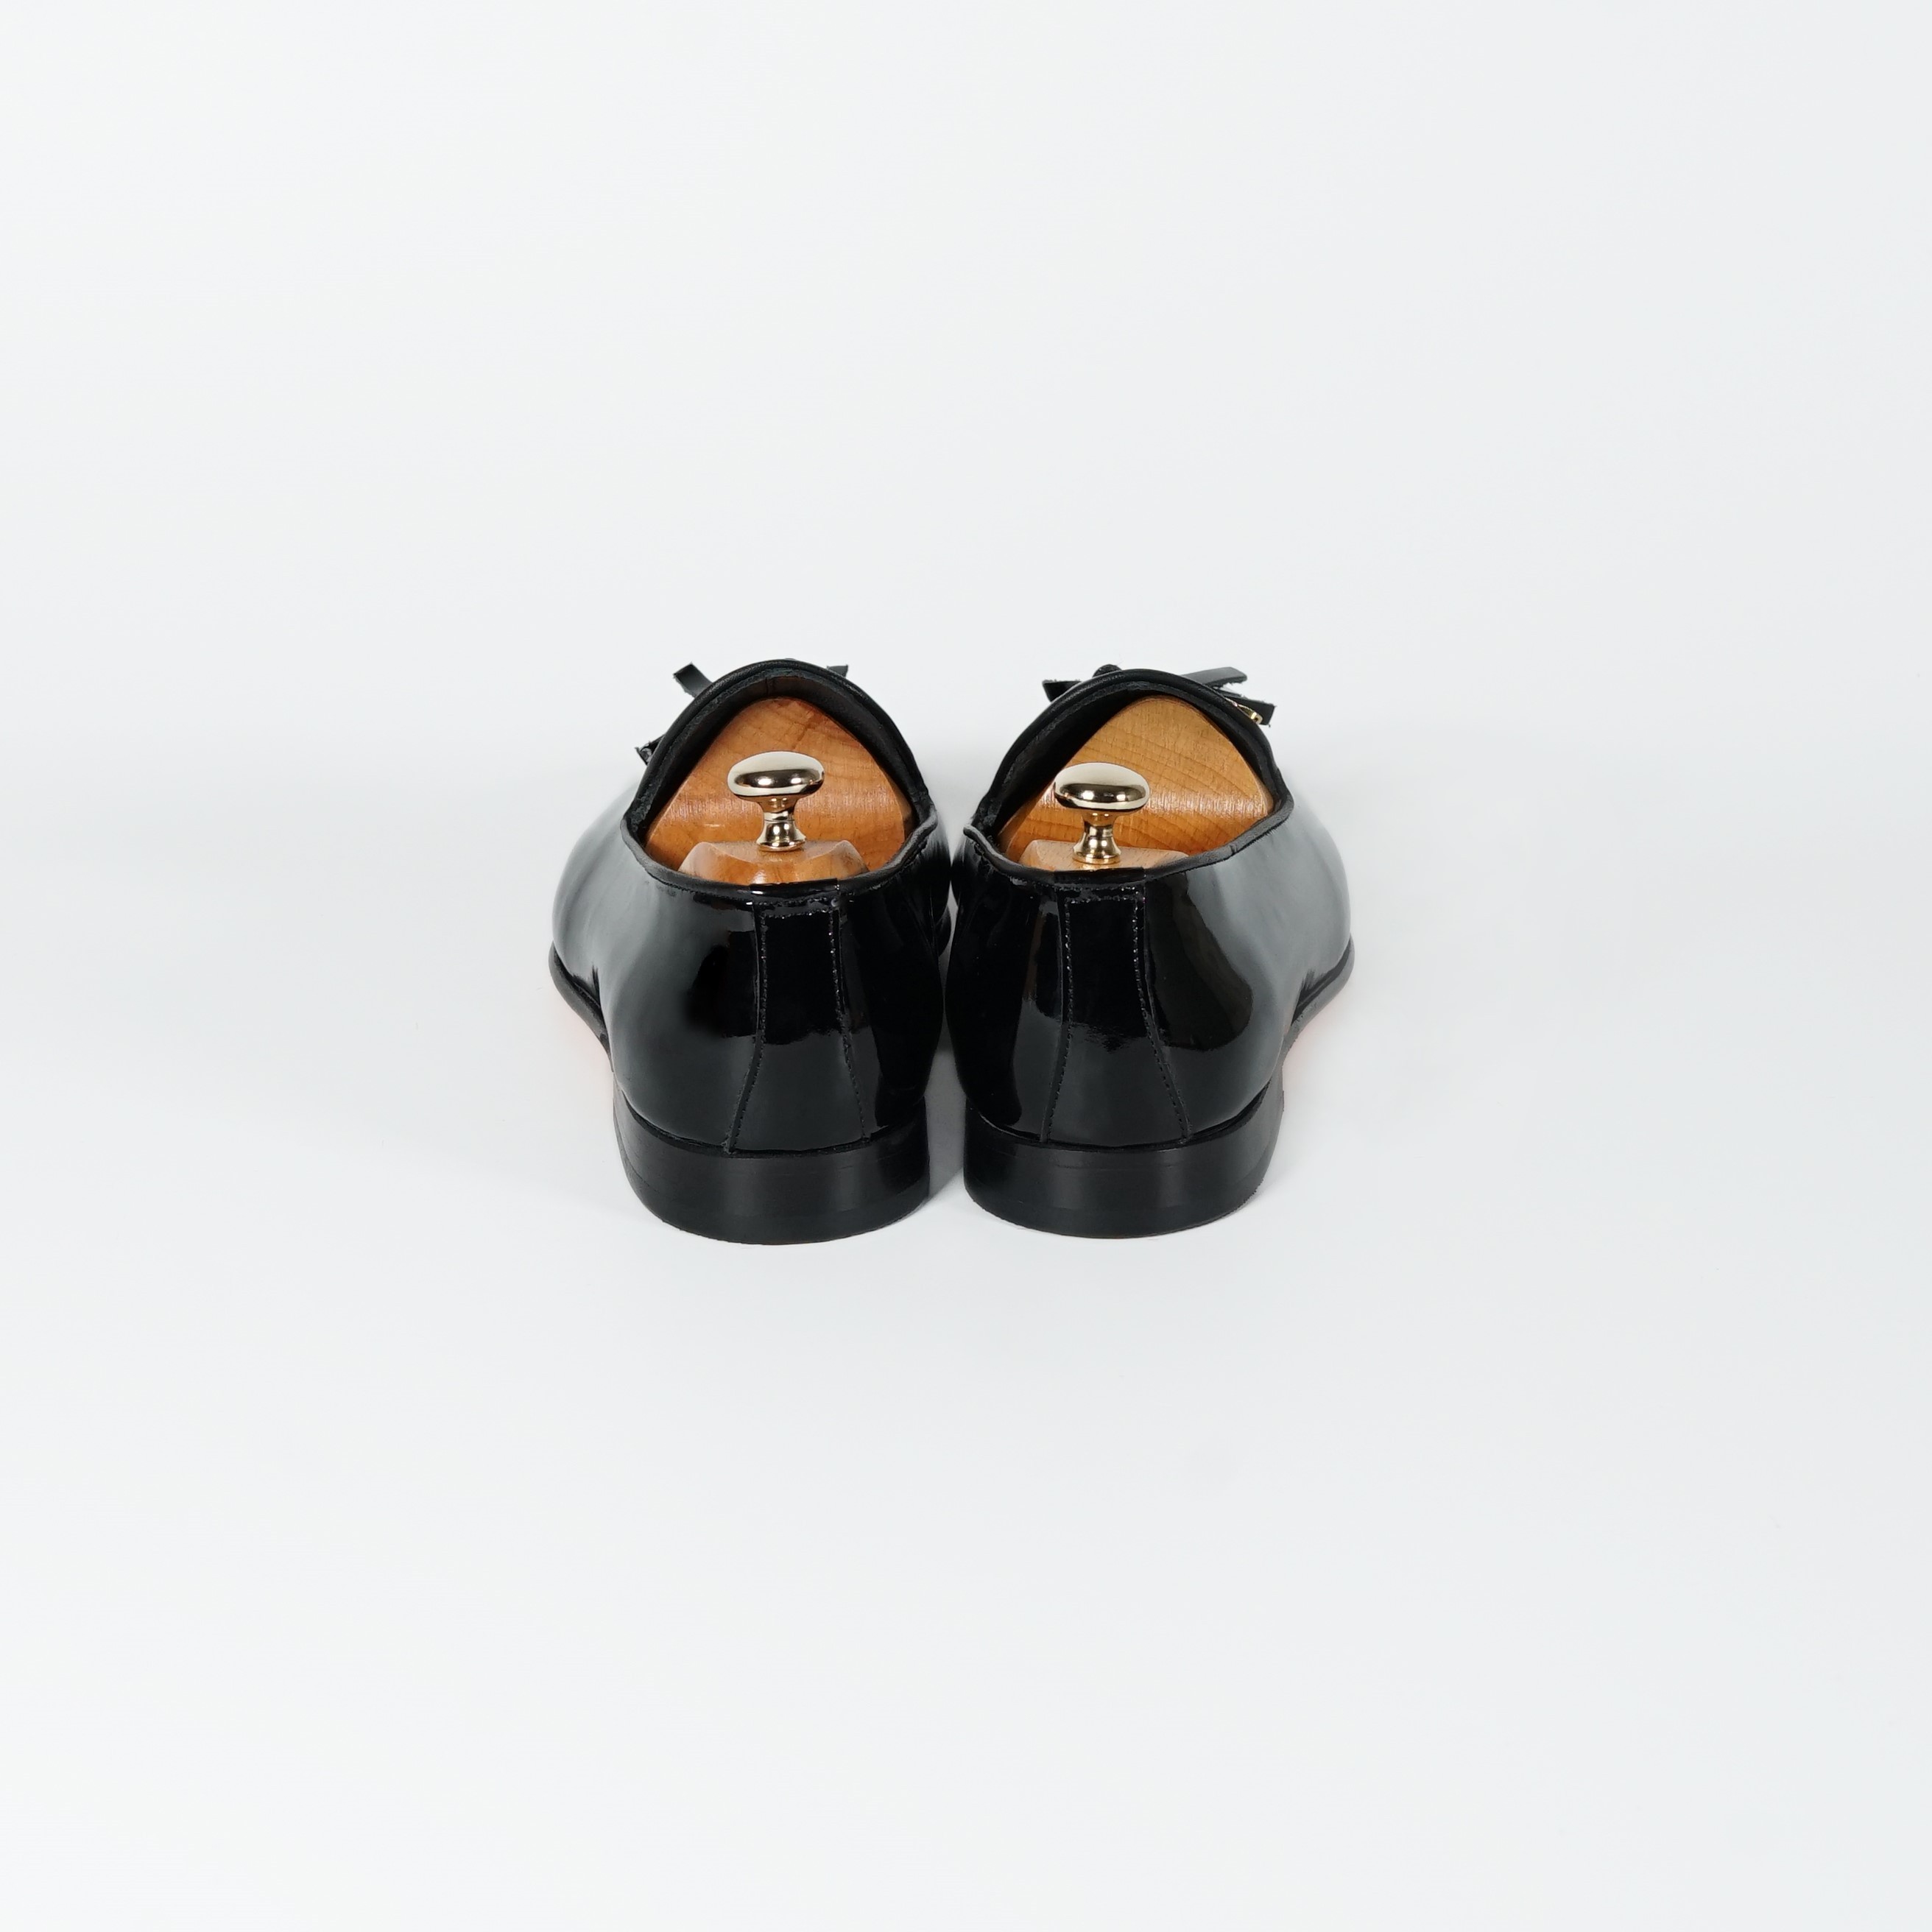 Twingold Kişiye Özel %100 Deri Püsküllü Rugan Erkek Ayakkabı - TWG009 - Siyah